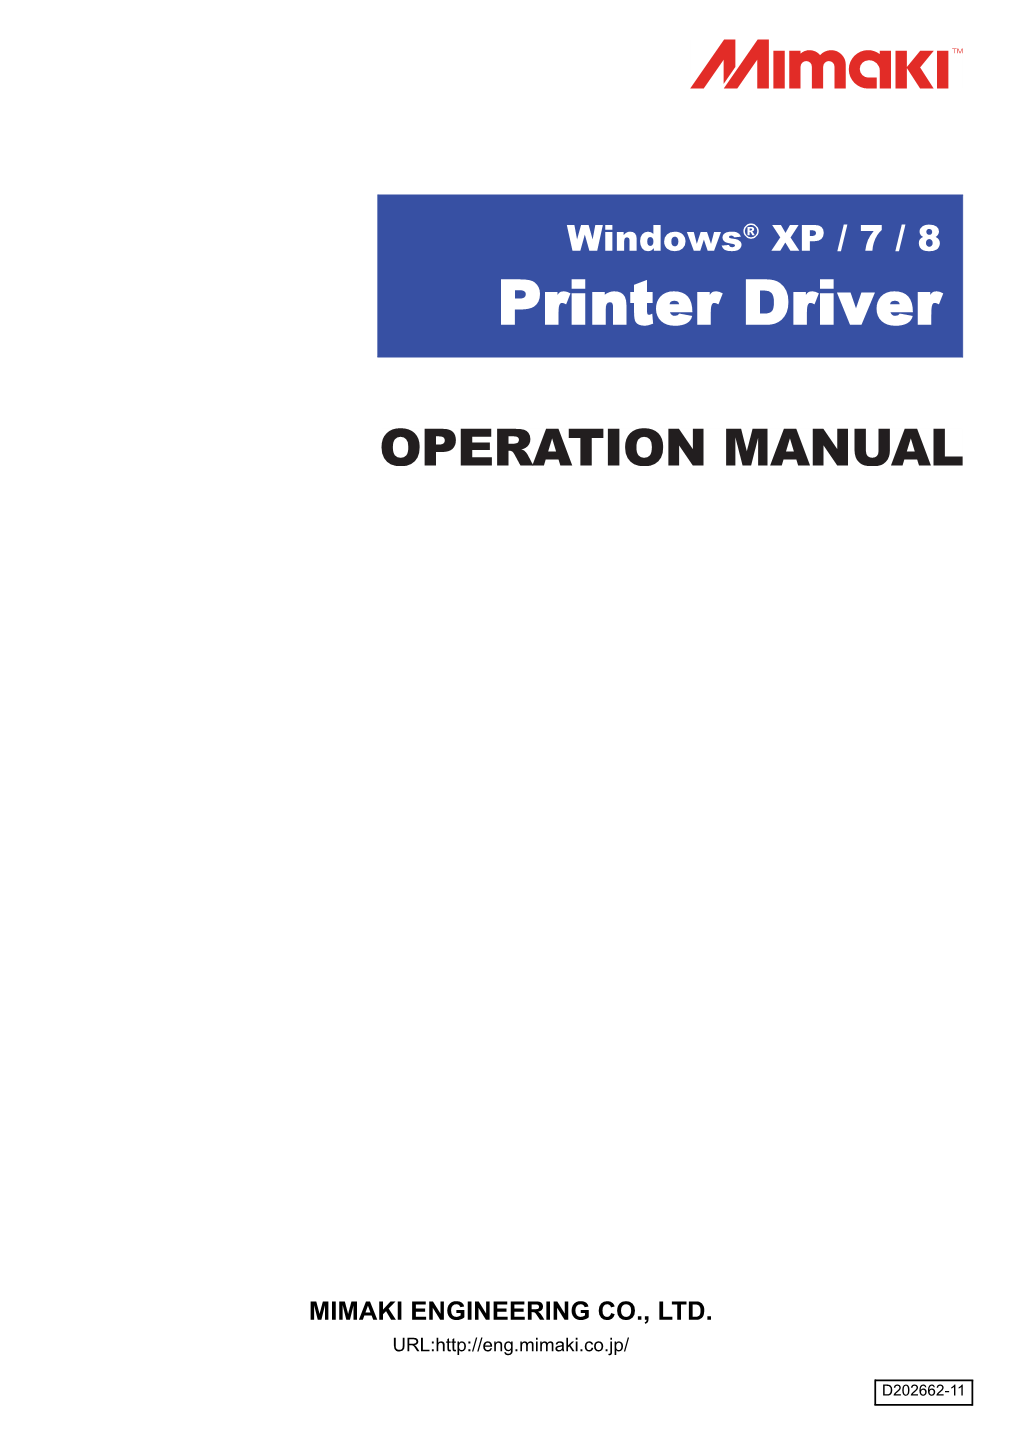 Printer Driver Manual